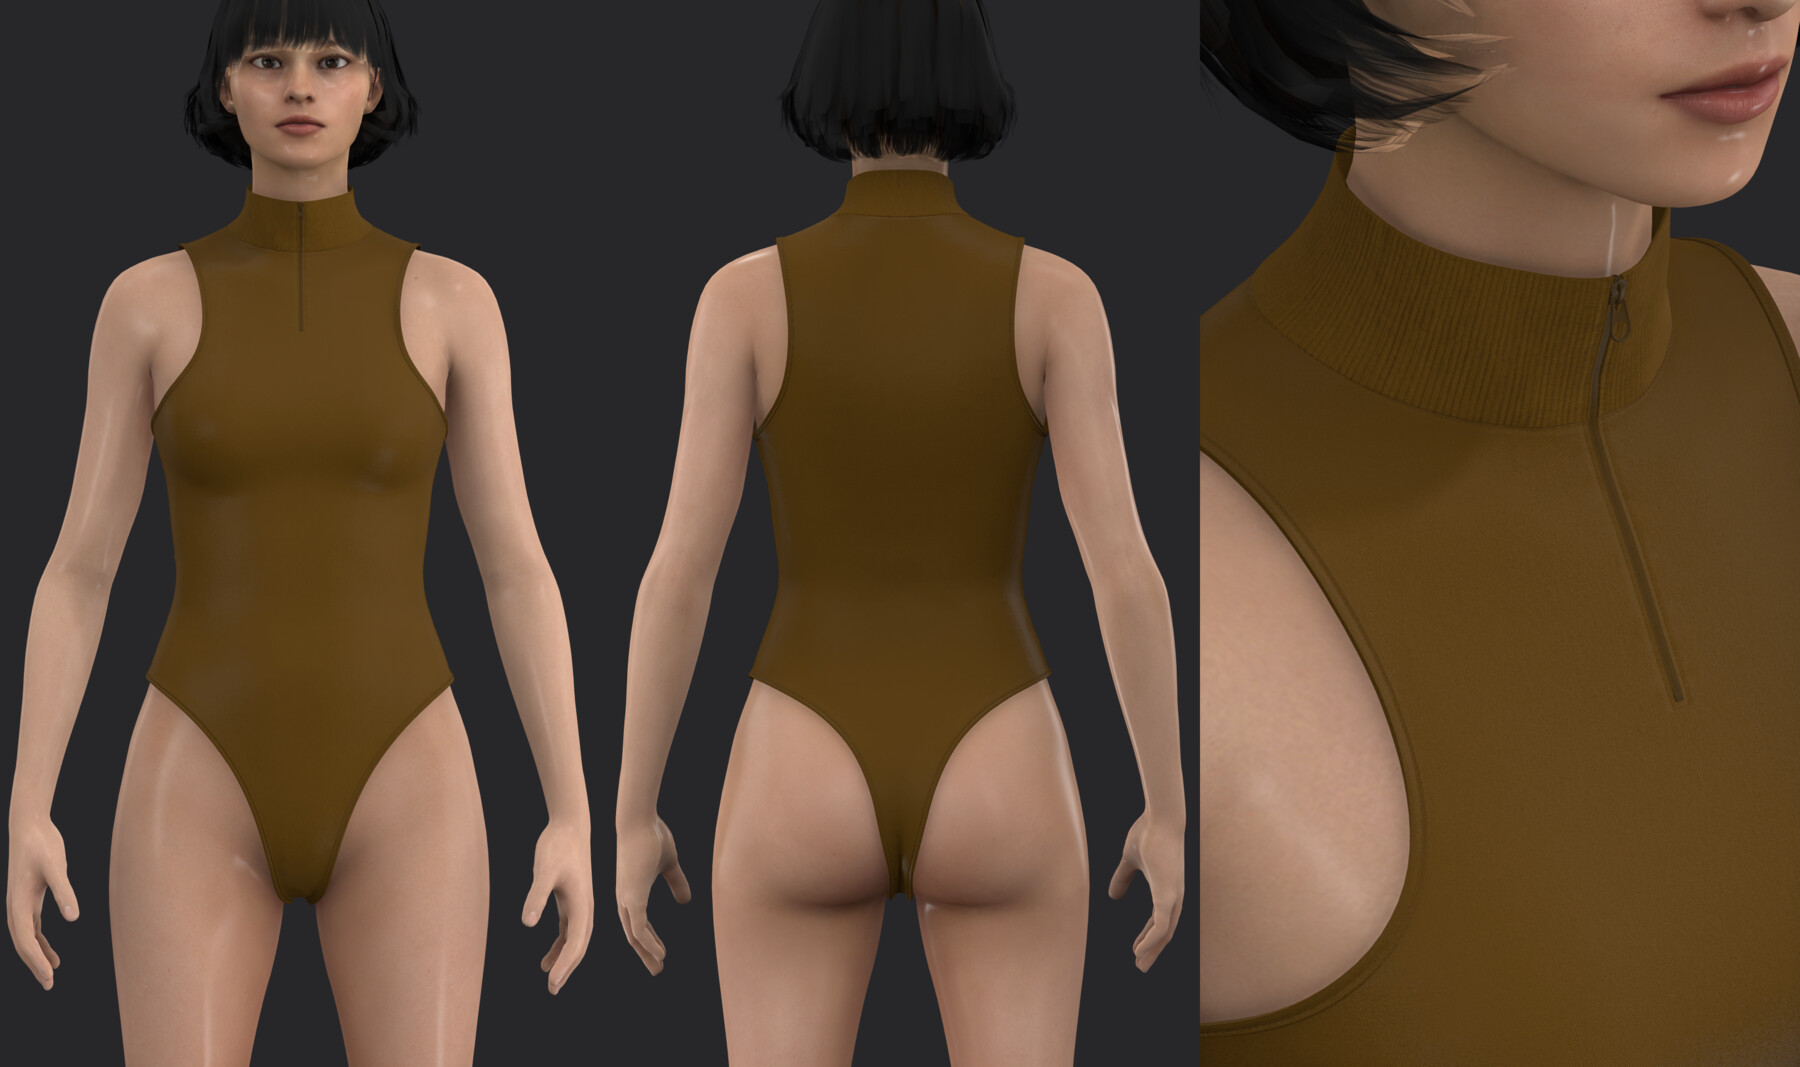 ArtStation - Women's bodysuits set (swimsuit, underwear, lingerie). MD / CLO  3D .zprj projects + obj